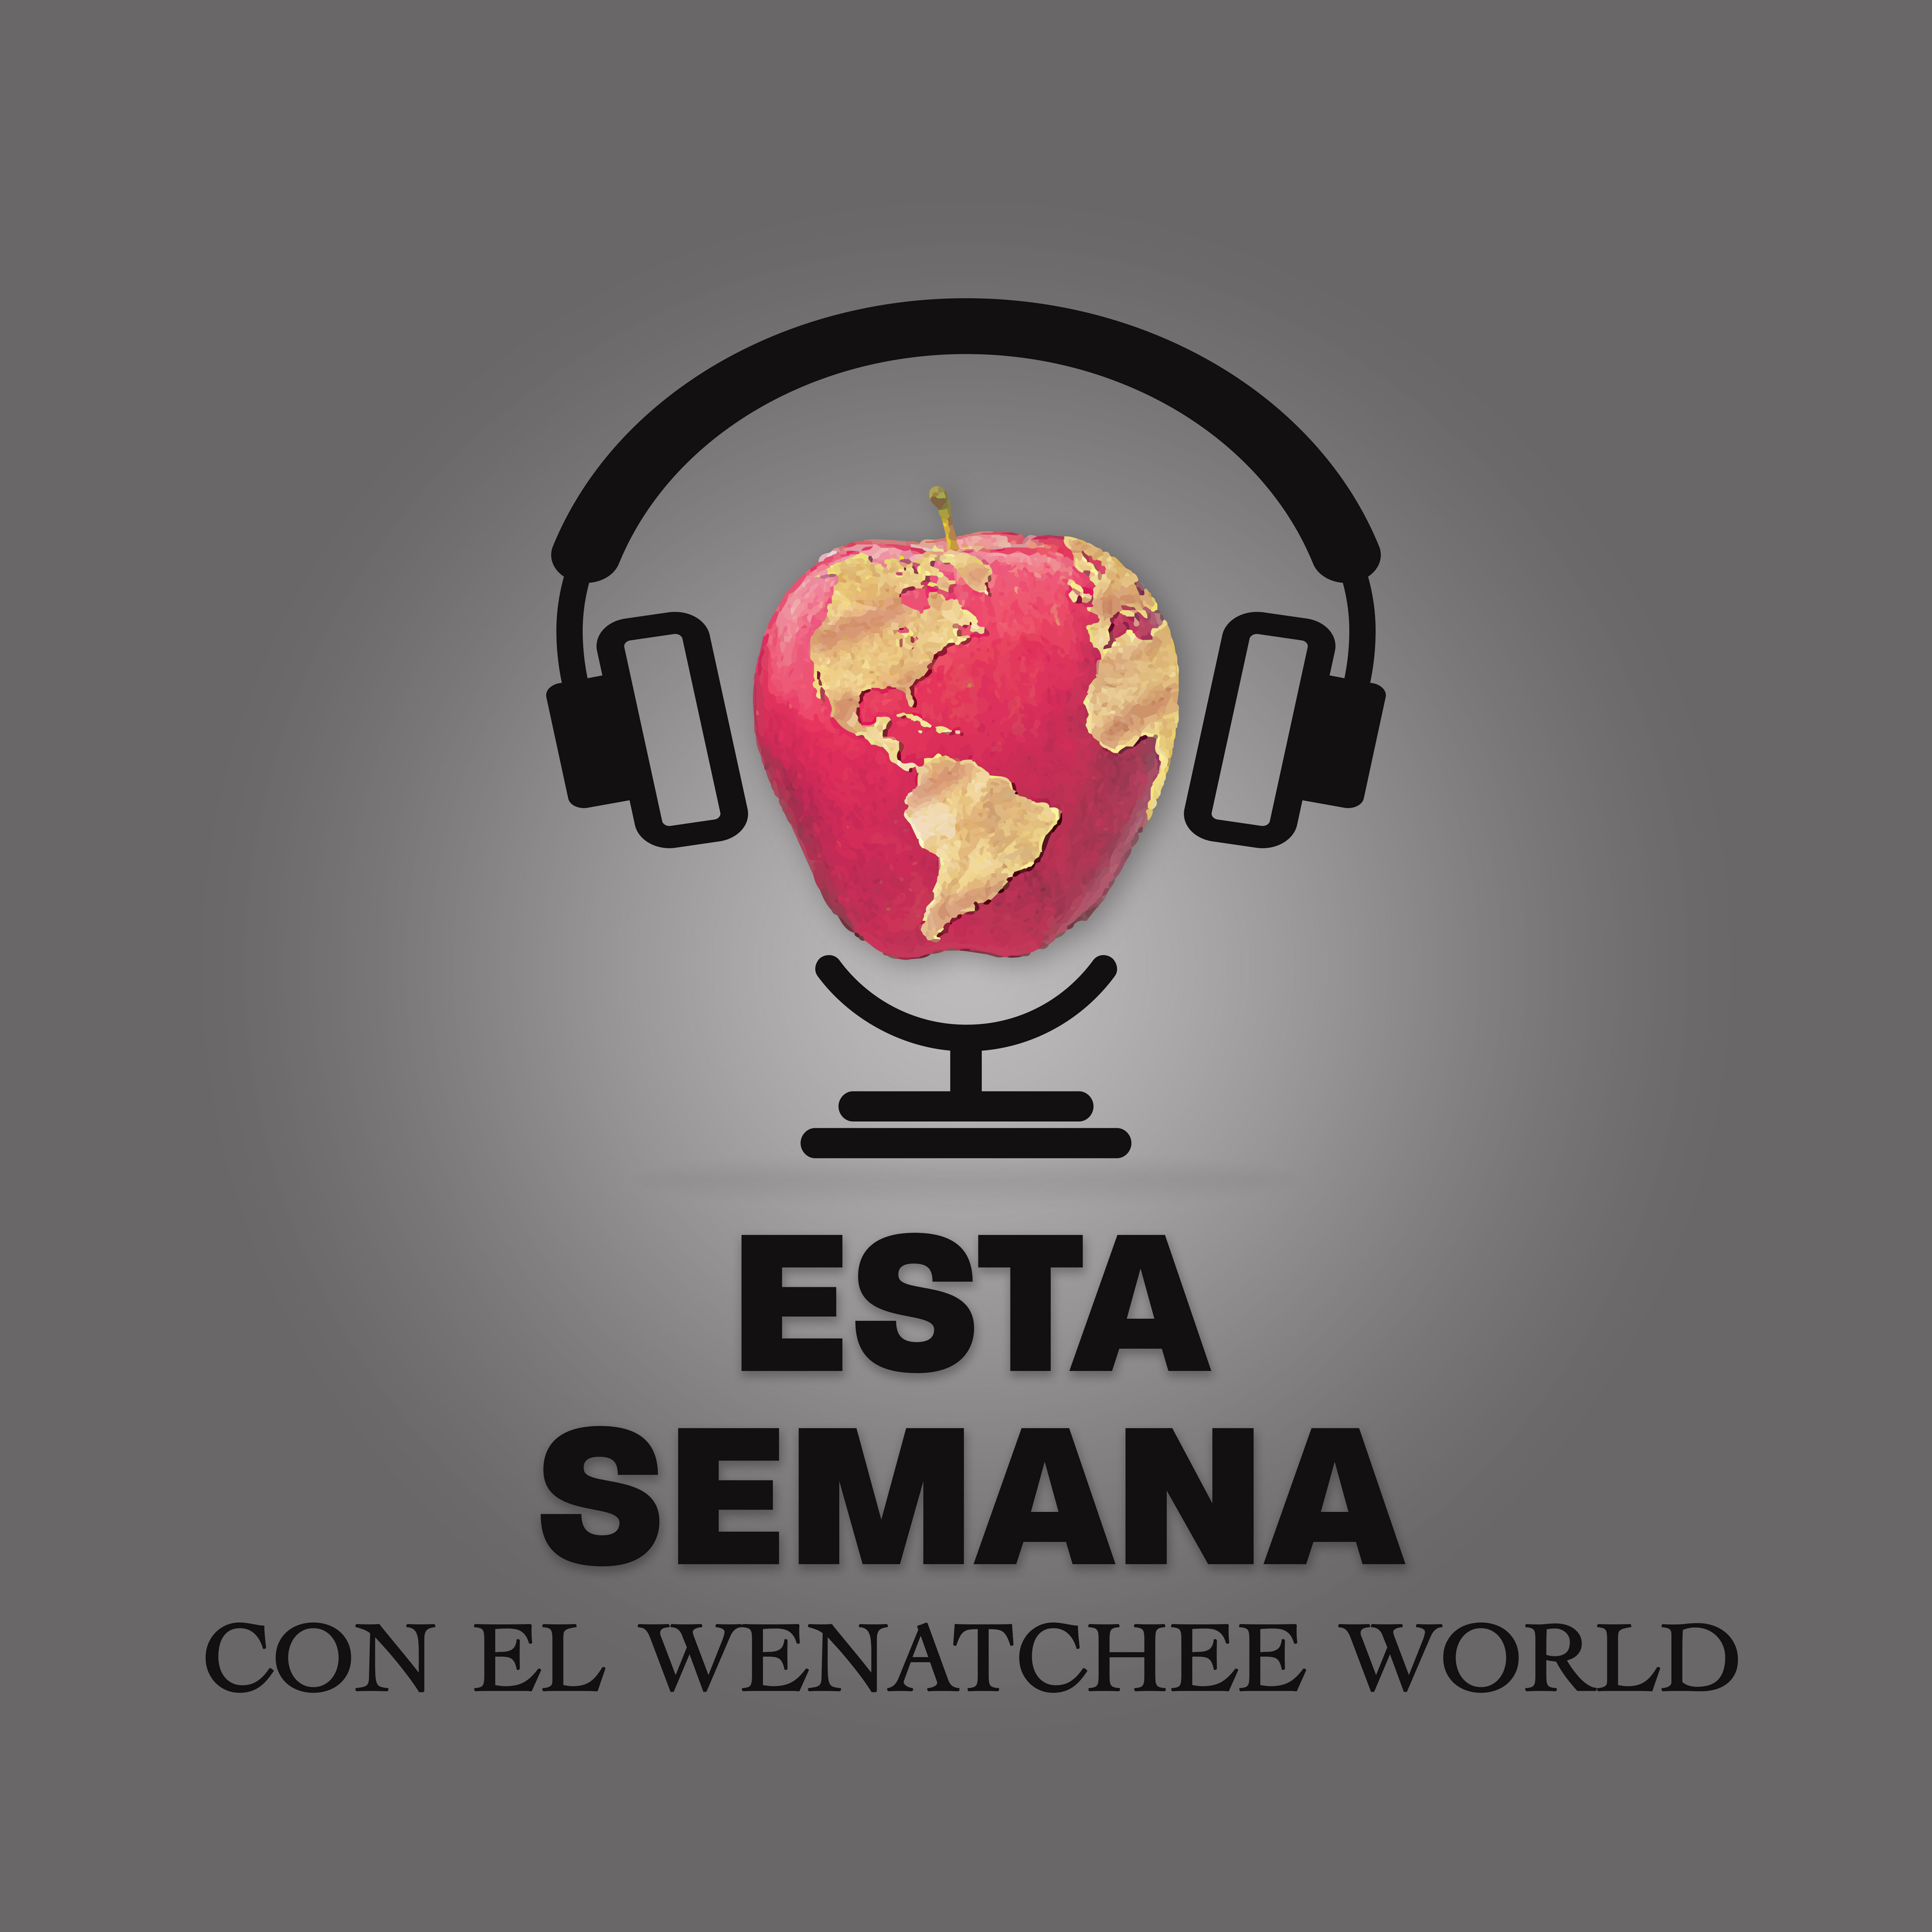 Esta Semana Con El Wenatchee World: Un Torneo de Basquetbol Causa Brote